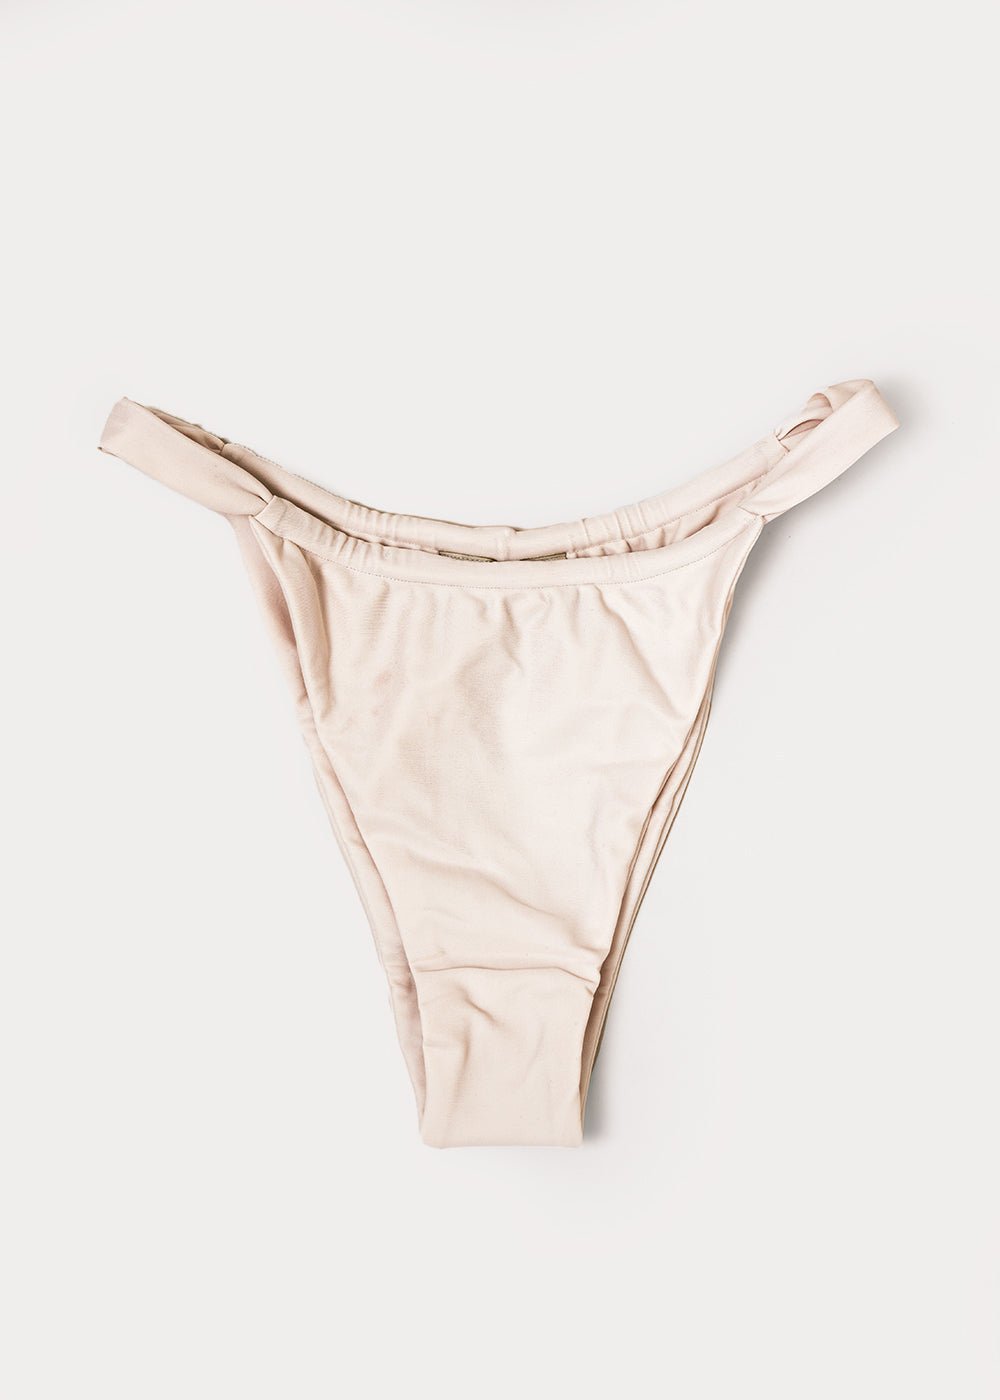 19 Best Ethical & Sustainable Zero Waste Underwear Brands - The